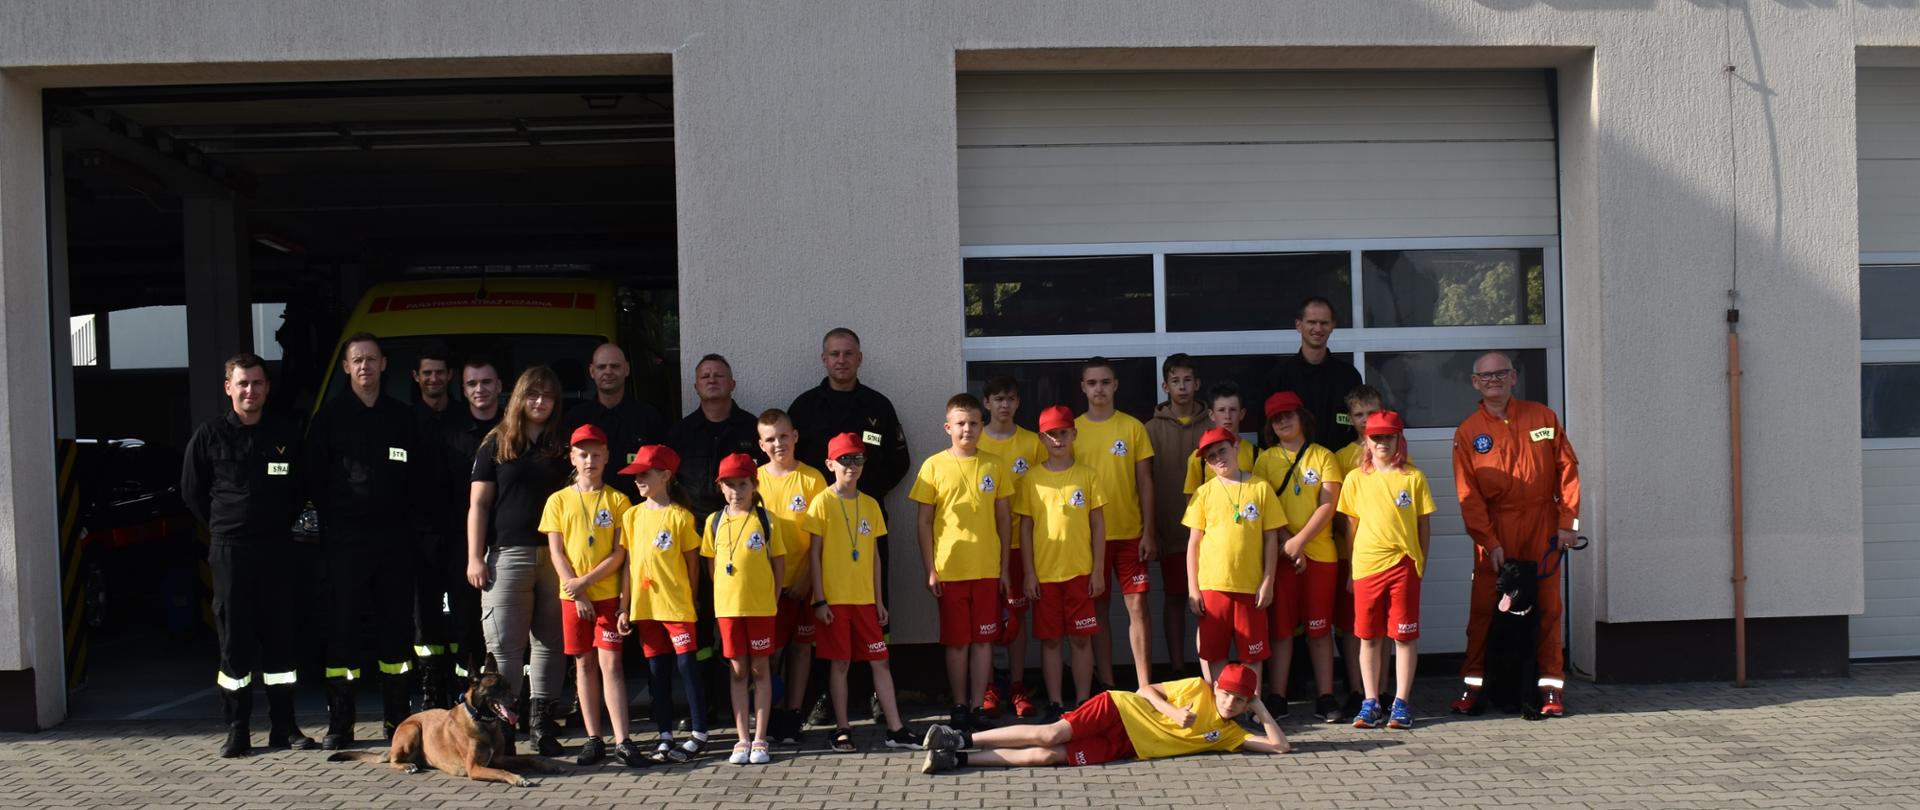 Na zdjęciu grupa dzieci oraz strażacy i przewodnicy z psami ratowniczymi na tle pleszewskiej komendy straży.s